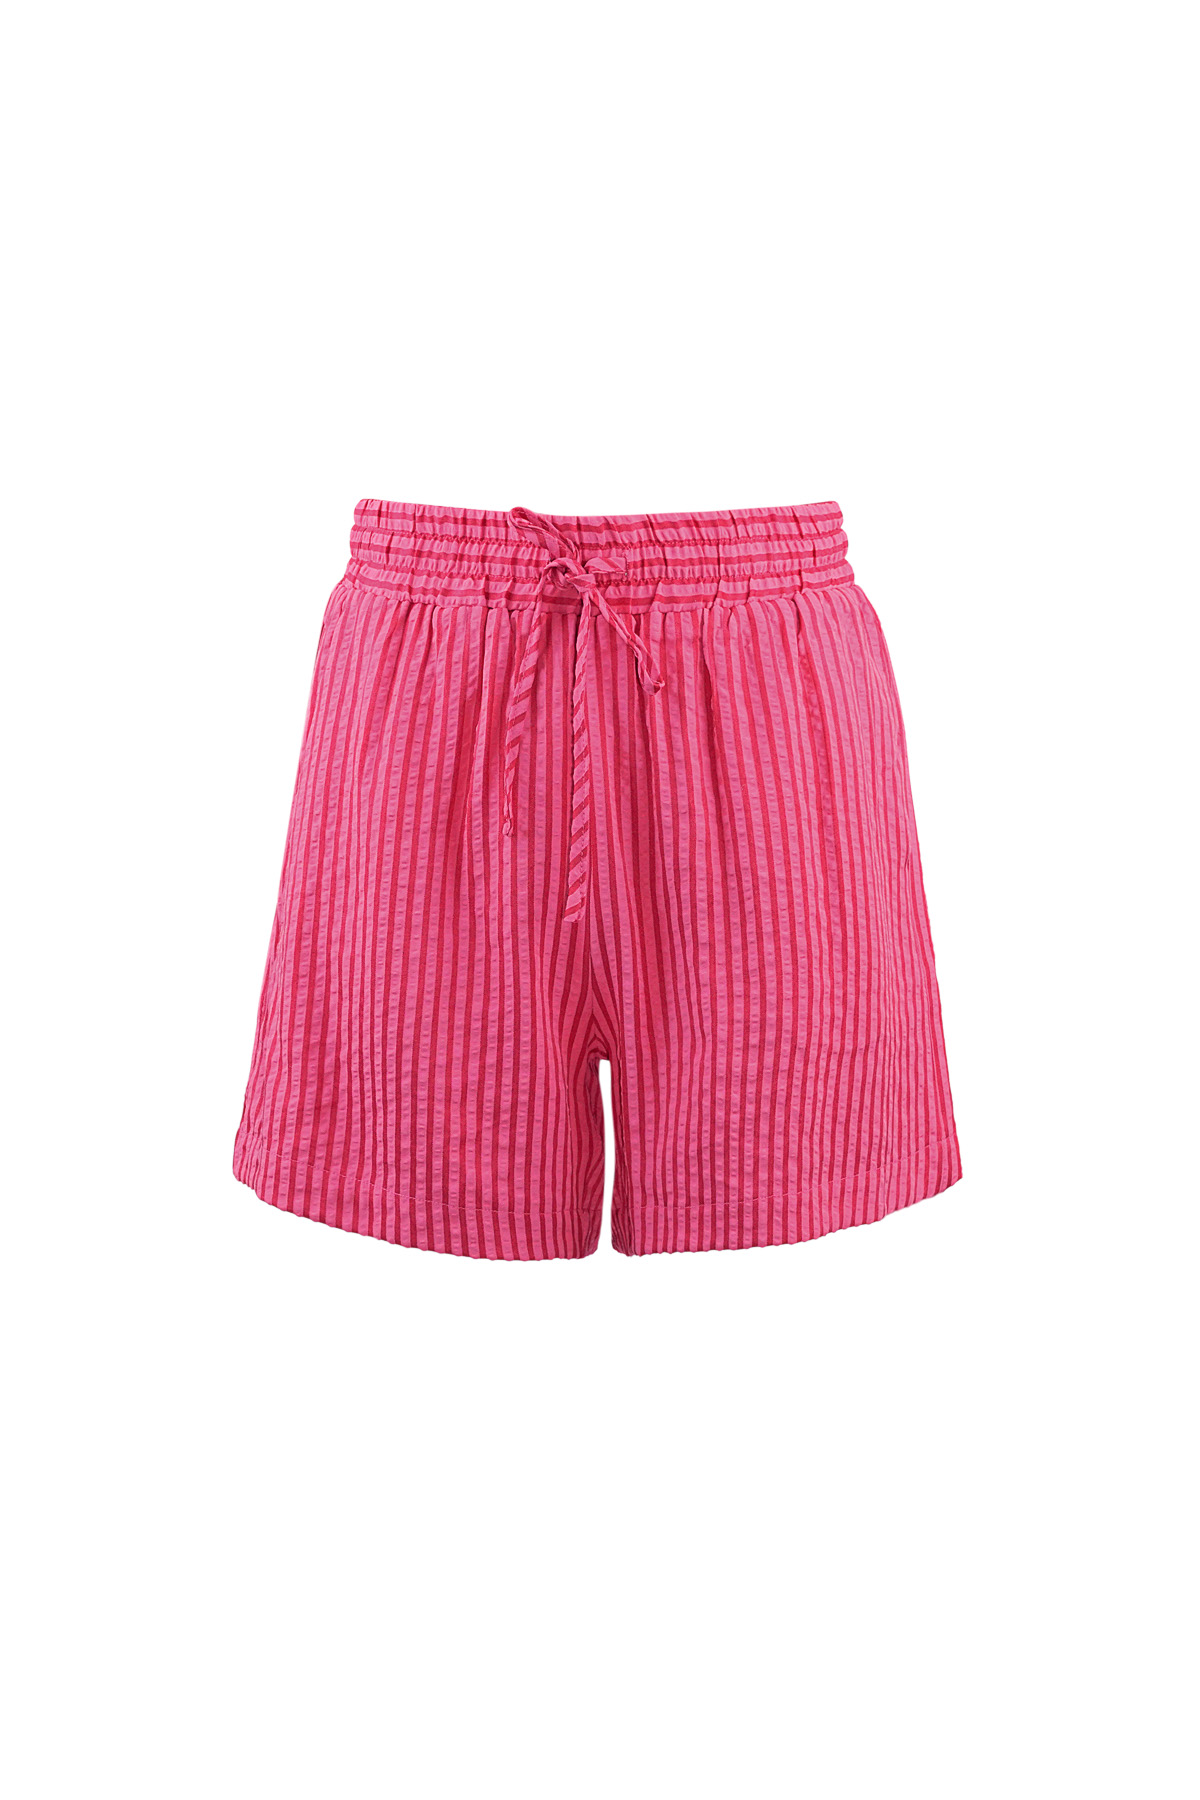 Pantaloncini a righe - rosso rosa